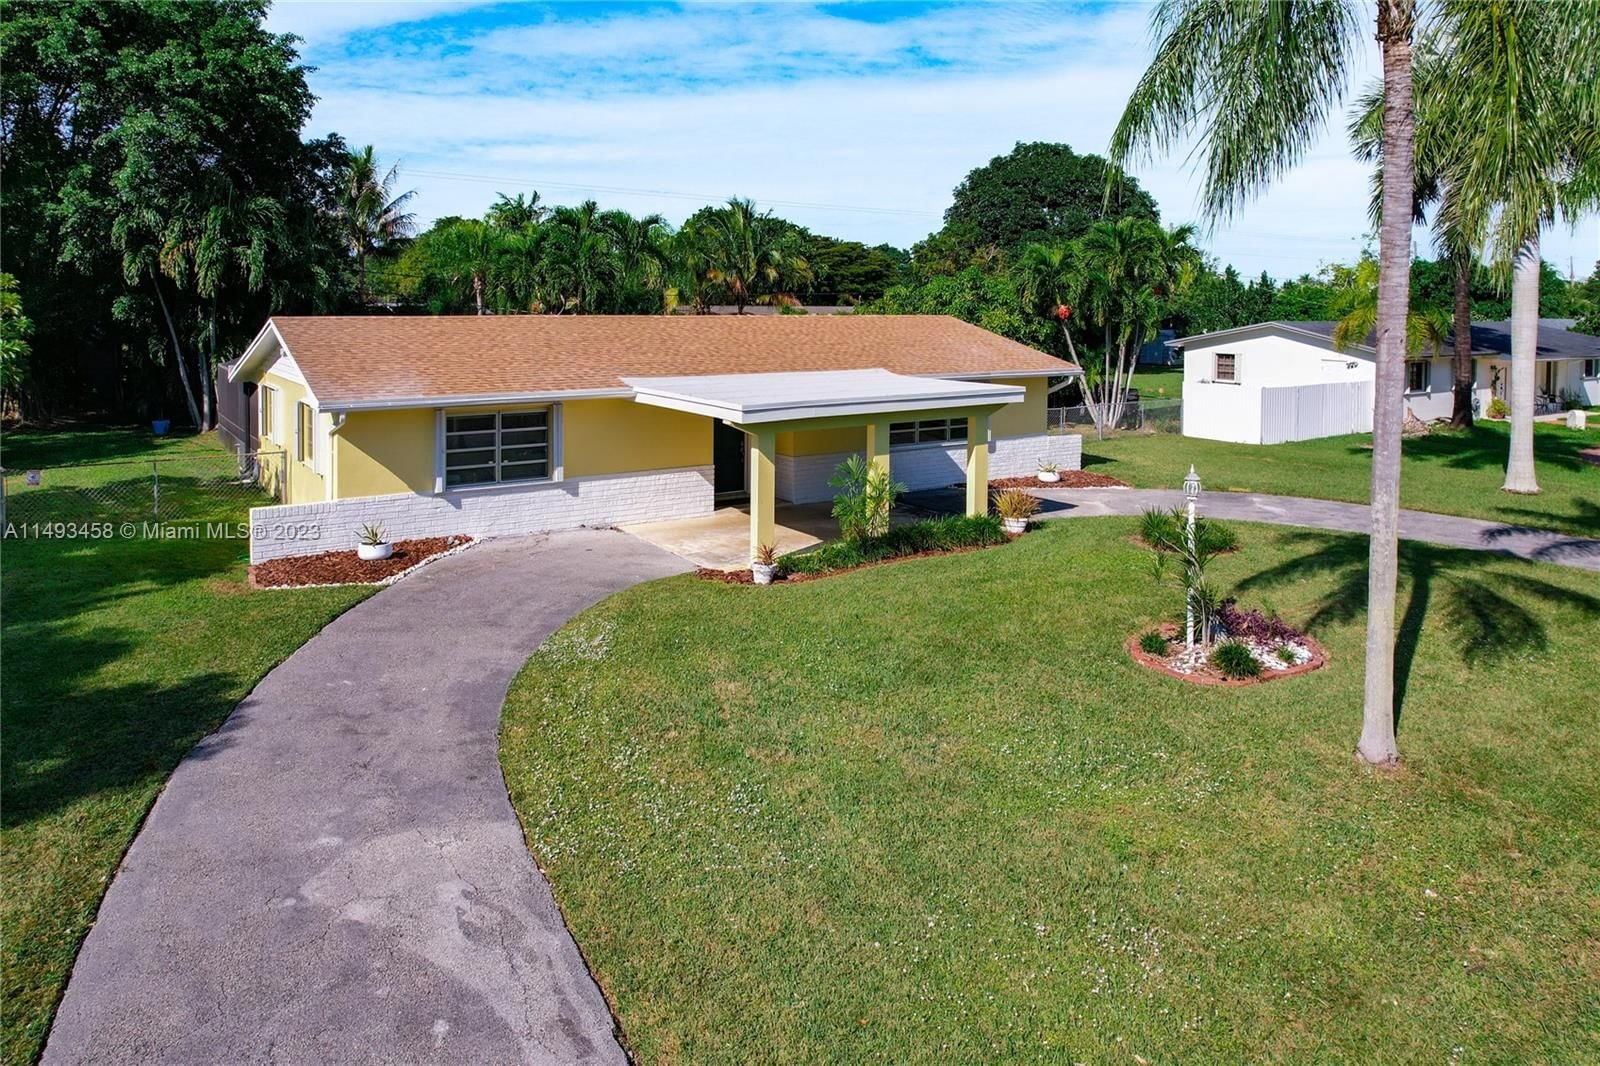 Real estate property located at 19520 128th Ave, Miami-Dade County, TROPICO ESTATES, Miami, FL